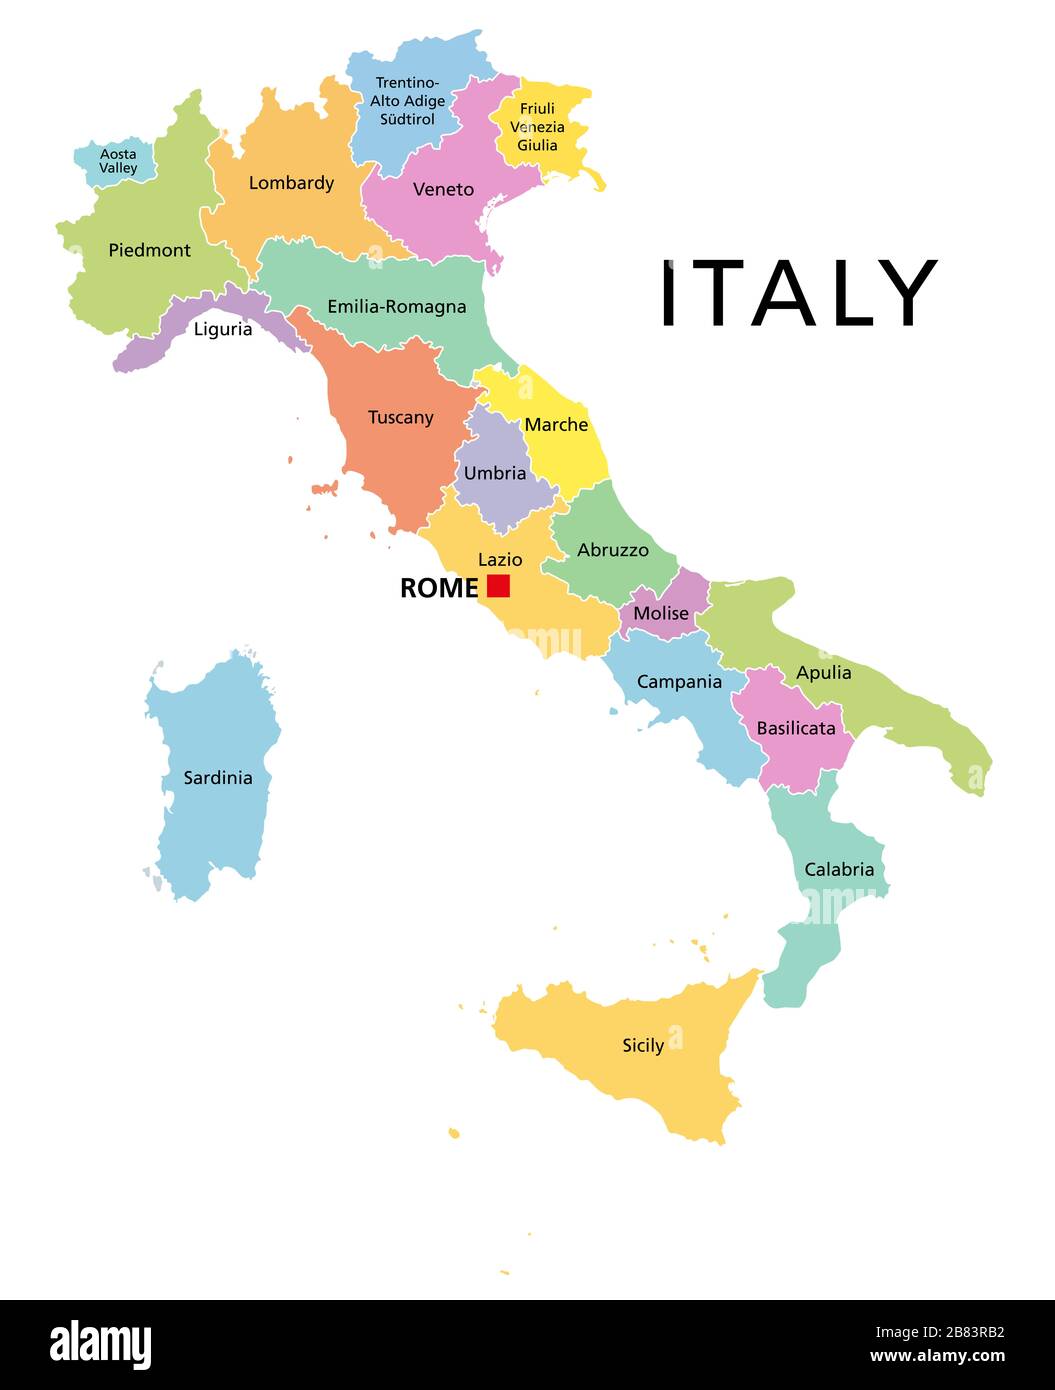 Italie, carte politique avec divisions administratives multicolores. République italienne avec la capitale Rome, leurs 20 régions et frontières. Étiquetage anglais. Banque D'Images